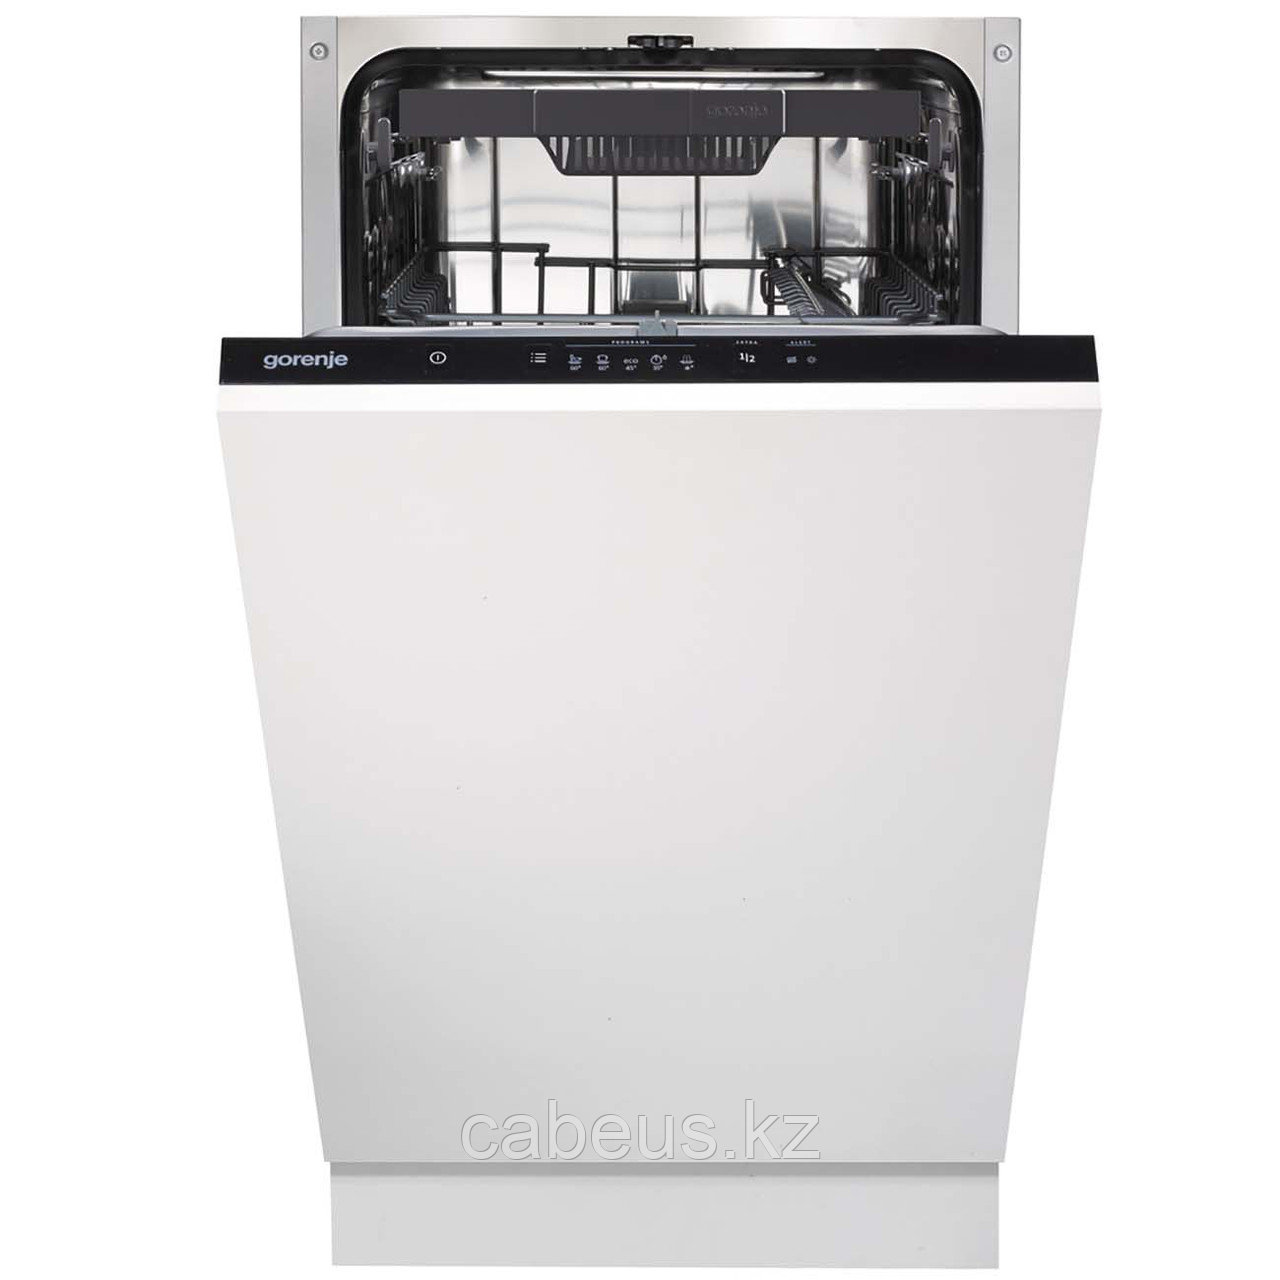 Встраиваемая посудомоечная машина 45 см Gorenje GV52112